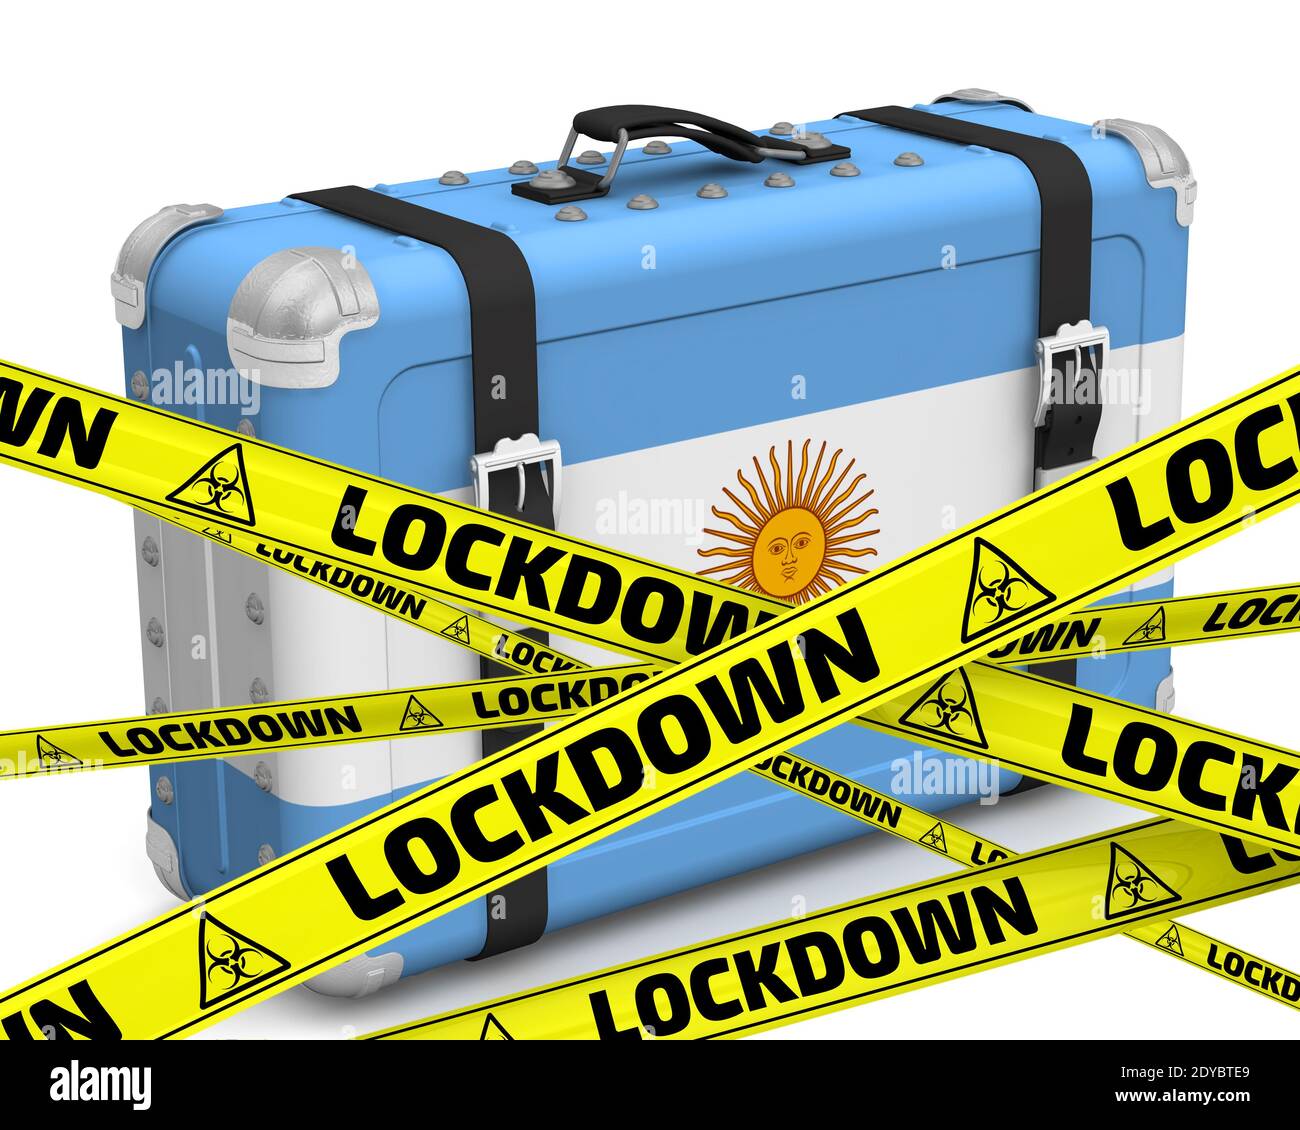 Argentinien befindet sich im Lockdown. Retro Koffer mit der Flagge der Argentinischen Republik auf einer weißen Oberfläche mit gelben Warnbändern, die LOCKDOWN sagen Stockfoto